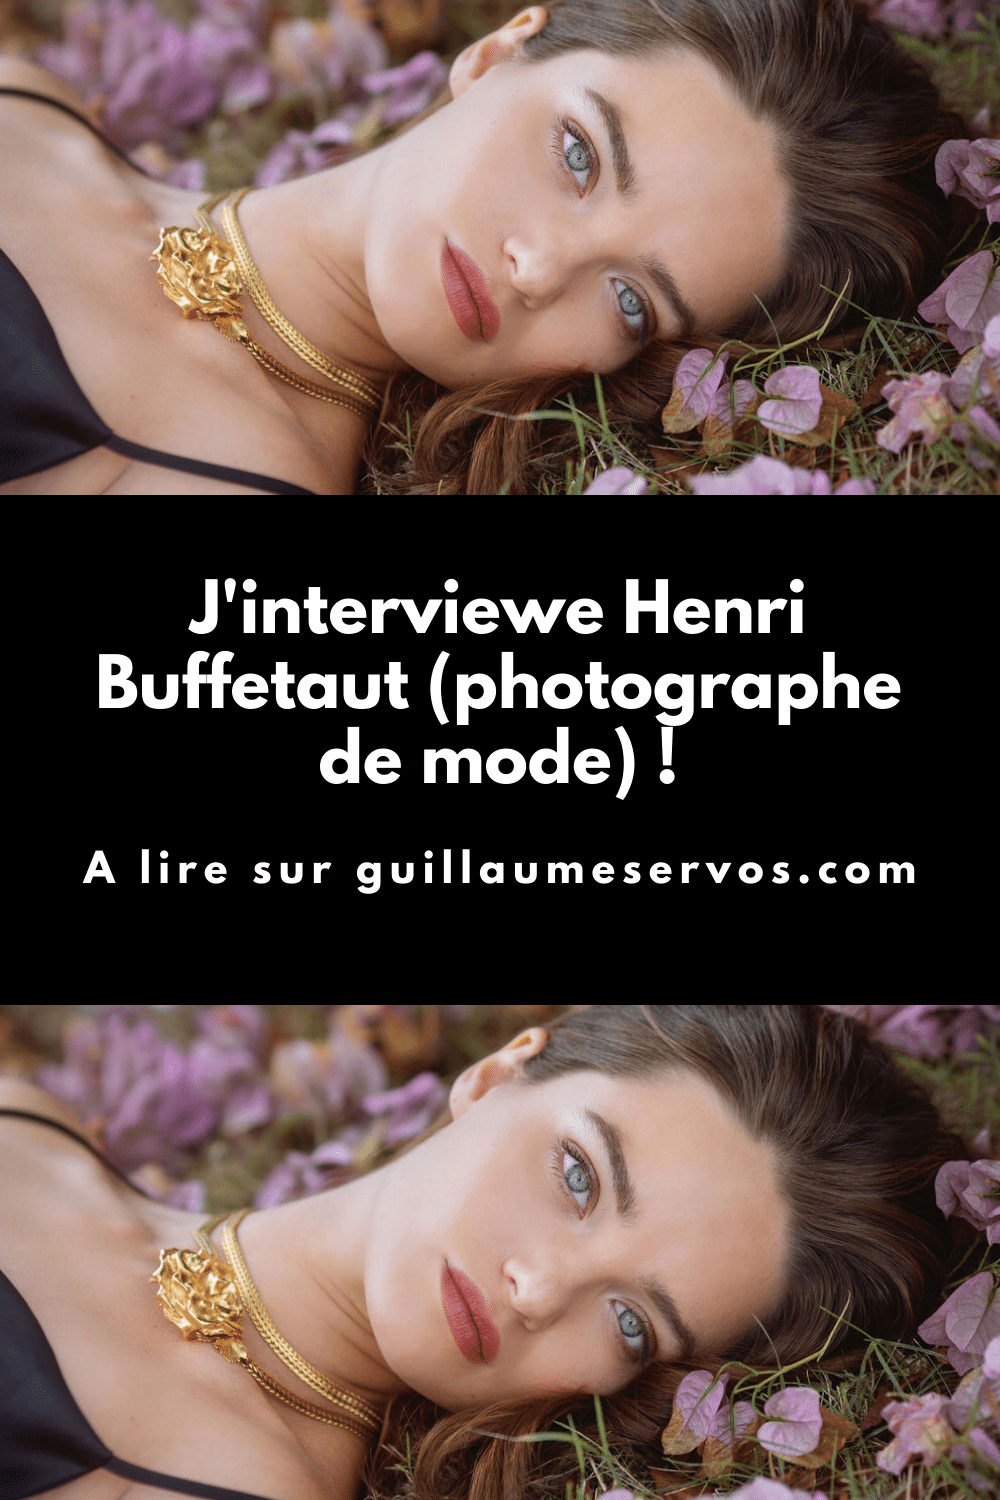 Découvre mon interview avec Henri Buffetaut, photographe de mode. Son rapport à la photographie, aux réseaux sociaux et au voyage.